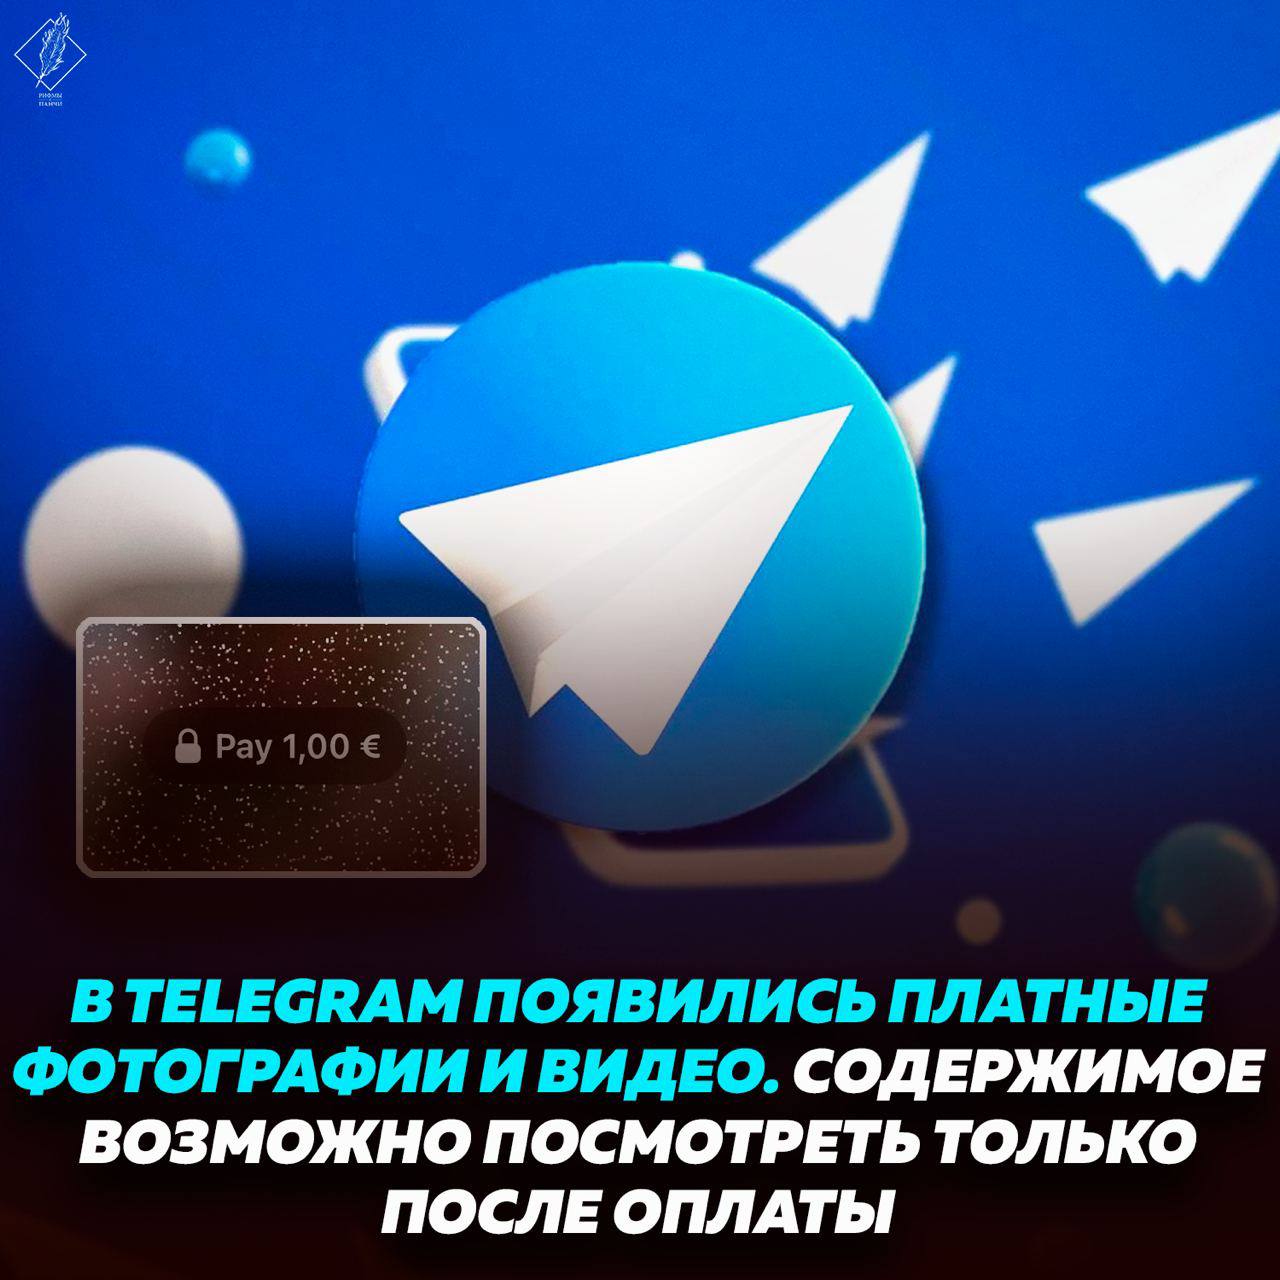 Видео в телеграмме как файл фото 65